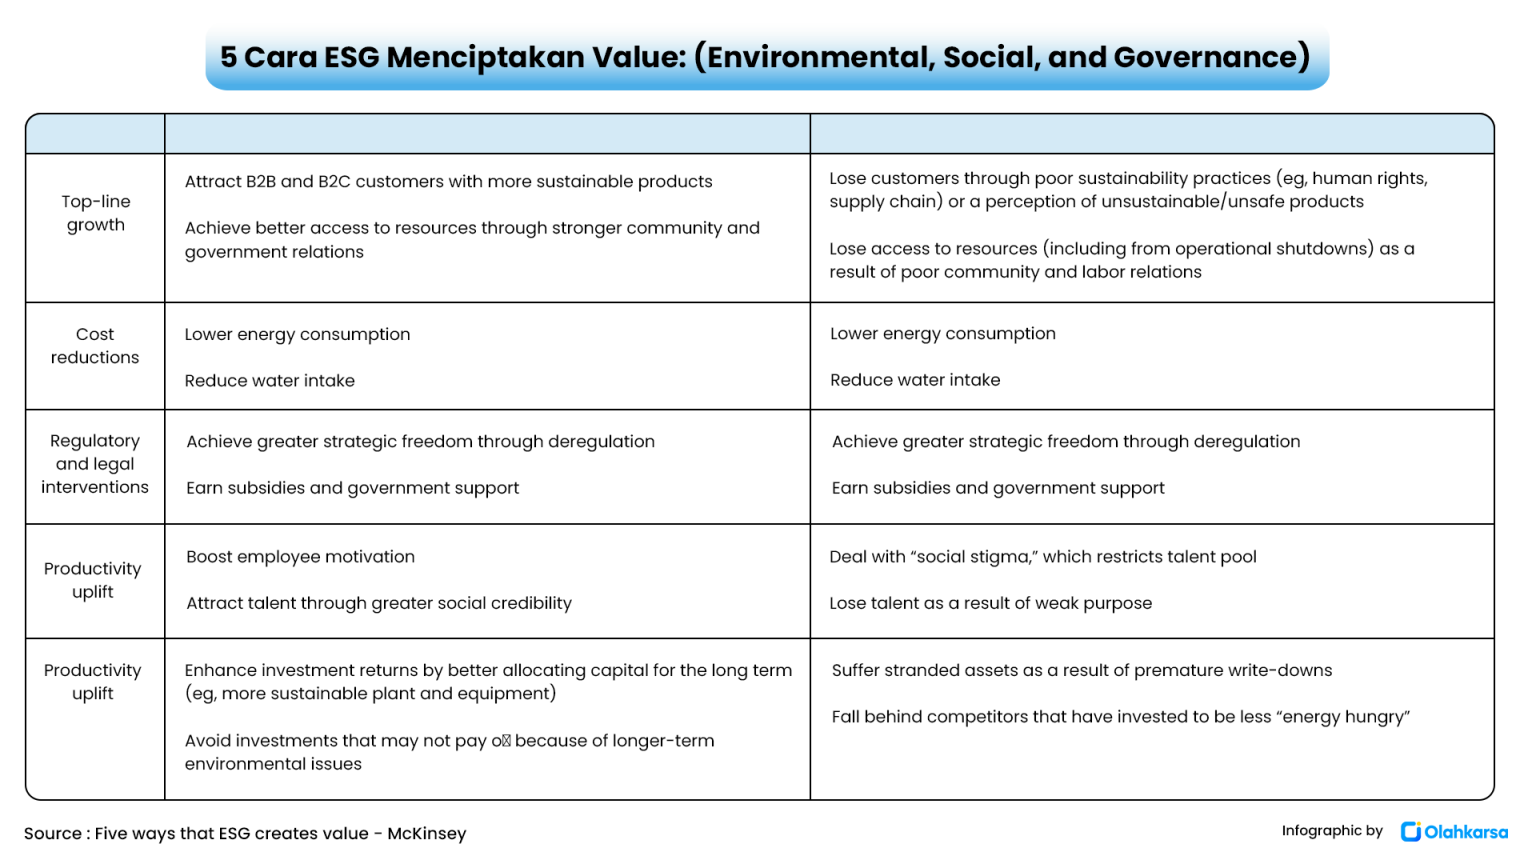 Environment value. Картинки в презентацию про ESG банкинг.